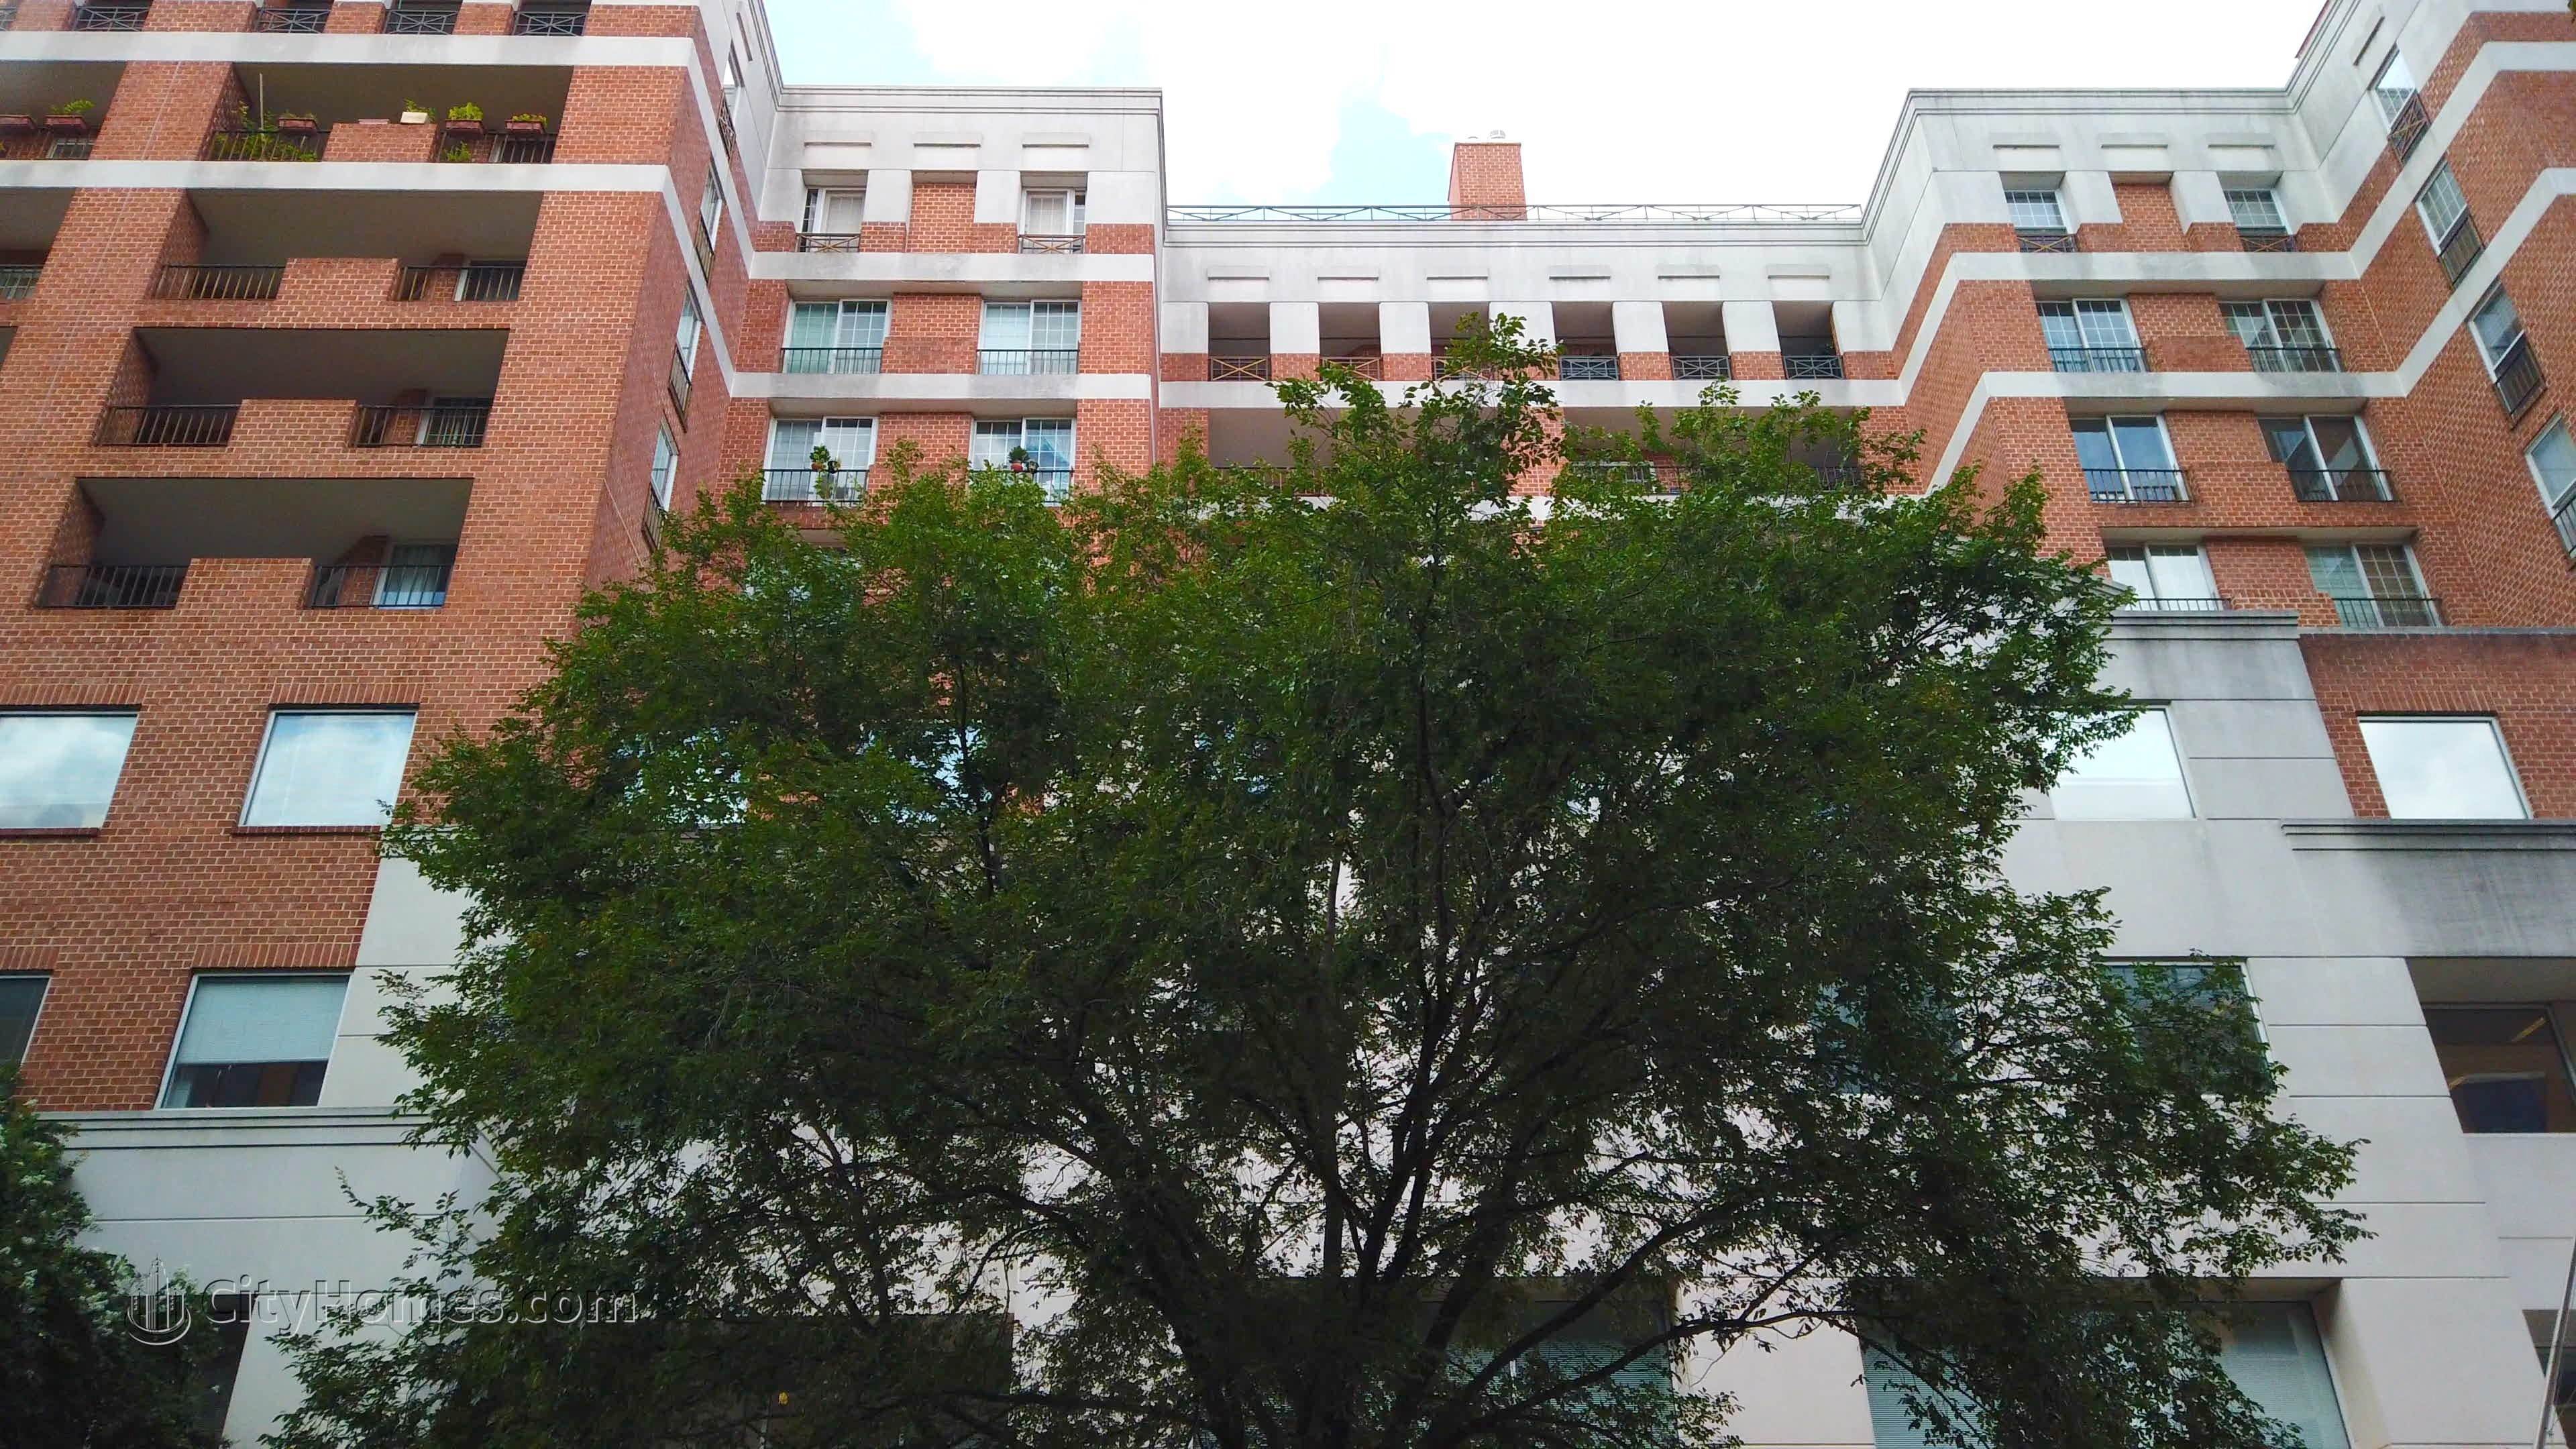 6. Metropolitan Condos edificio a 1230 23rd St NW, West End, Washington, DC 20037